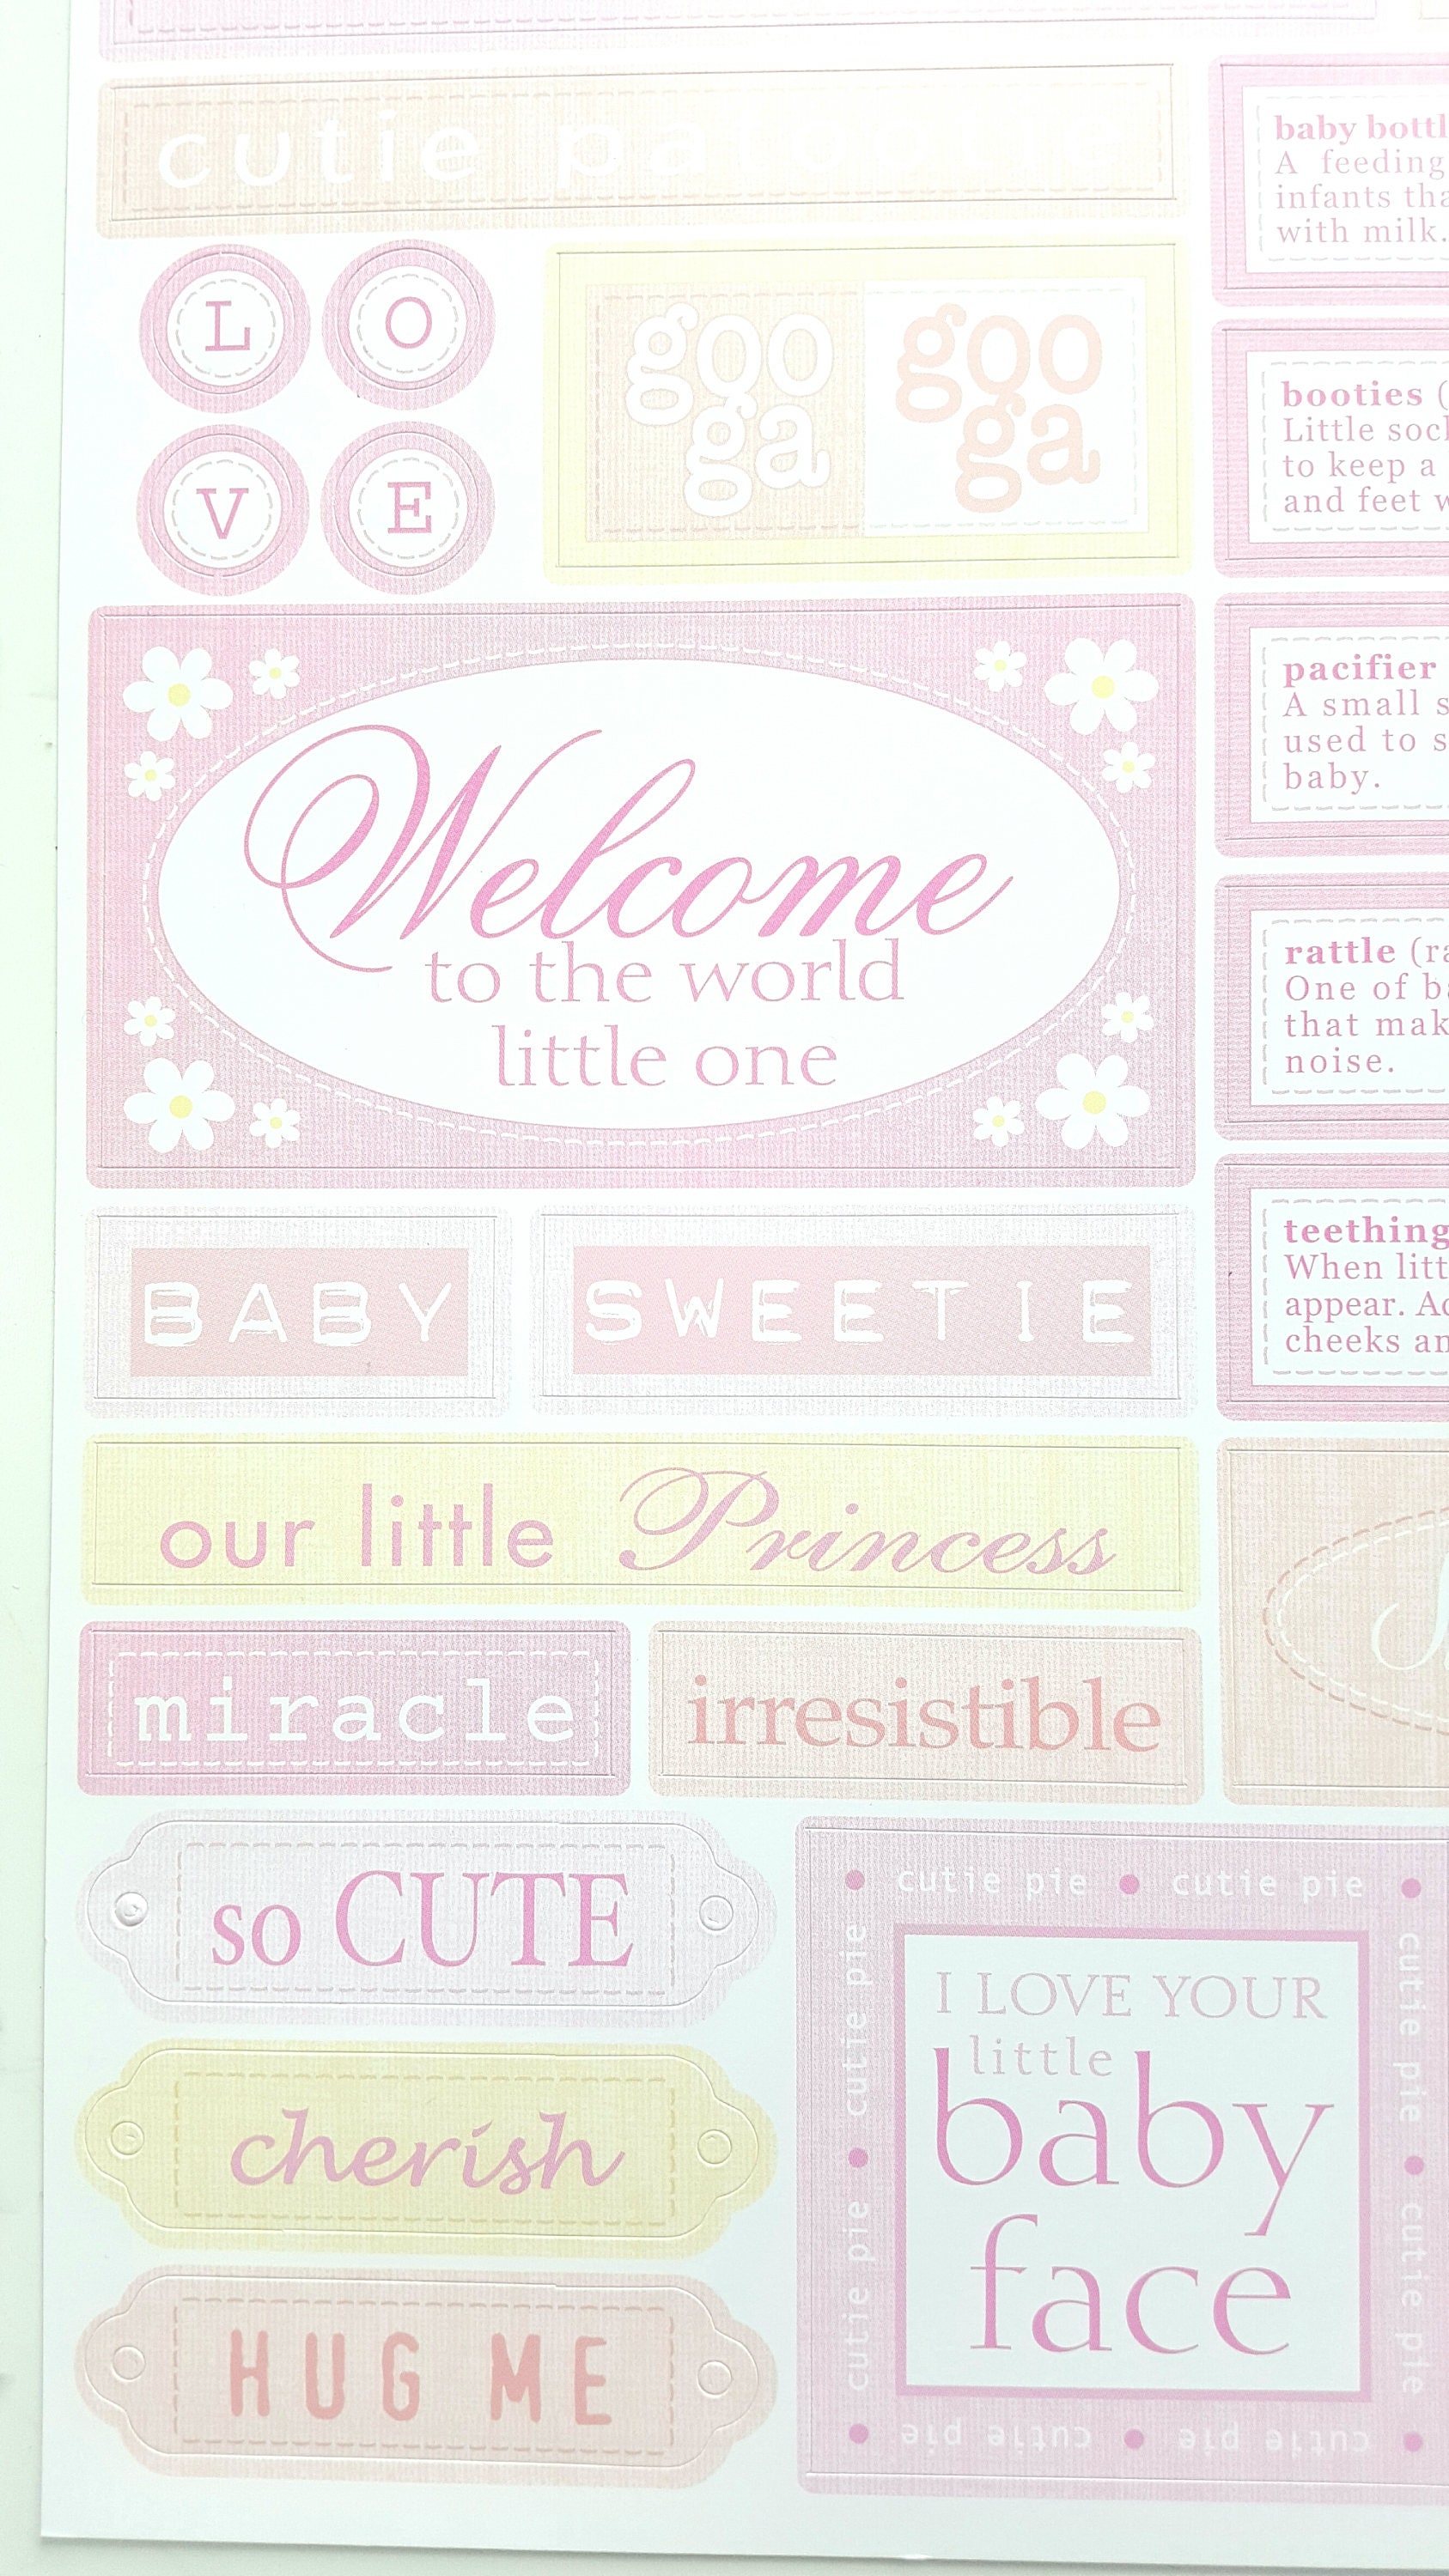 Scrapbook Stickers - Baby Girl